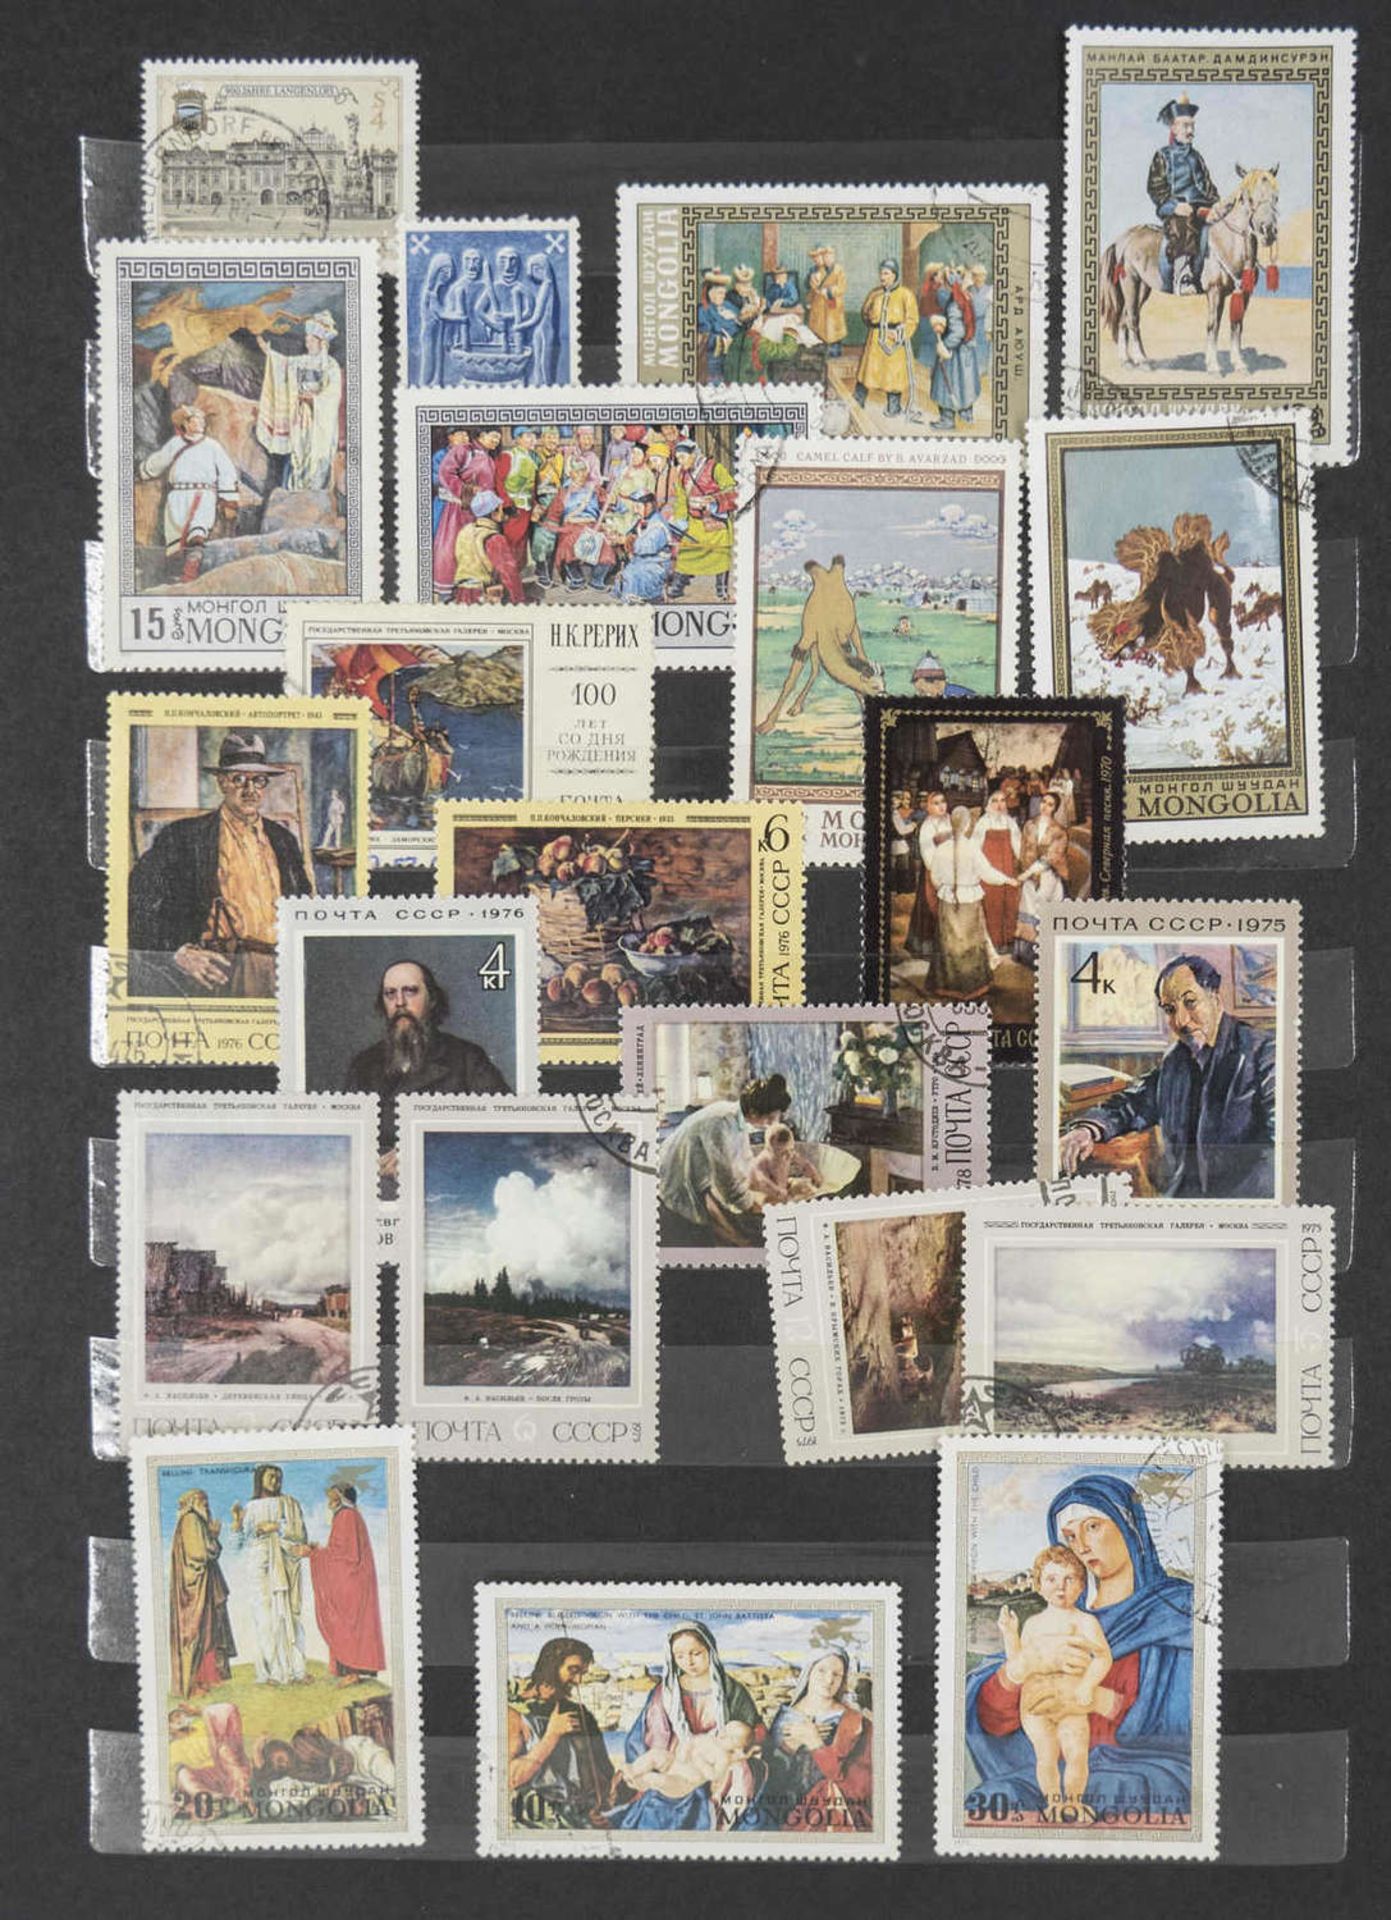 Steck - Album "alrabra" mit Briefmarken - Sammlung aus aller Welt. Überwiegend gestempelt. Eine - Bild 3 aus 13